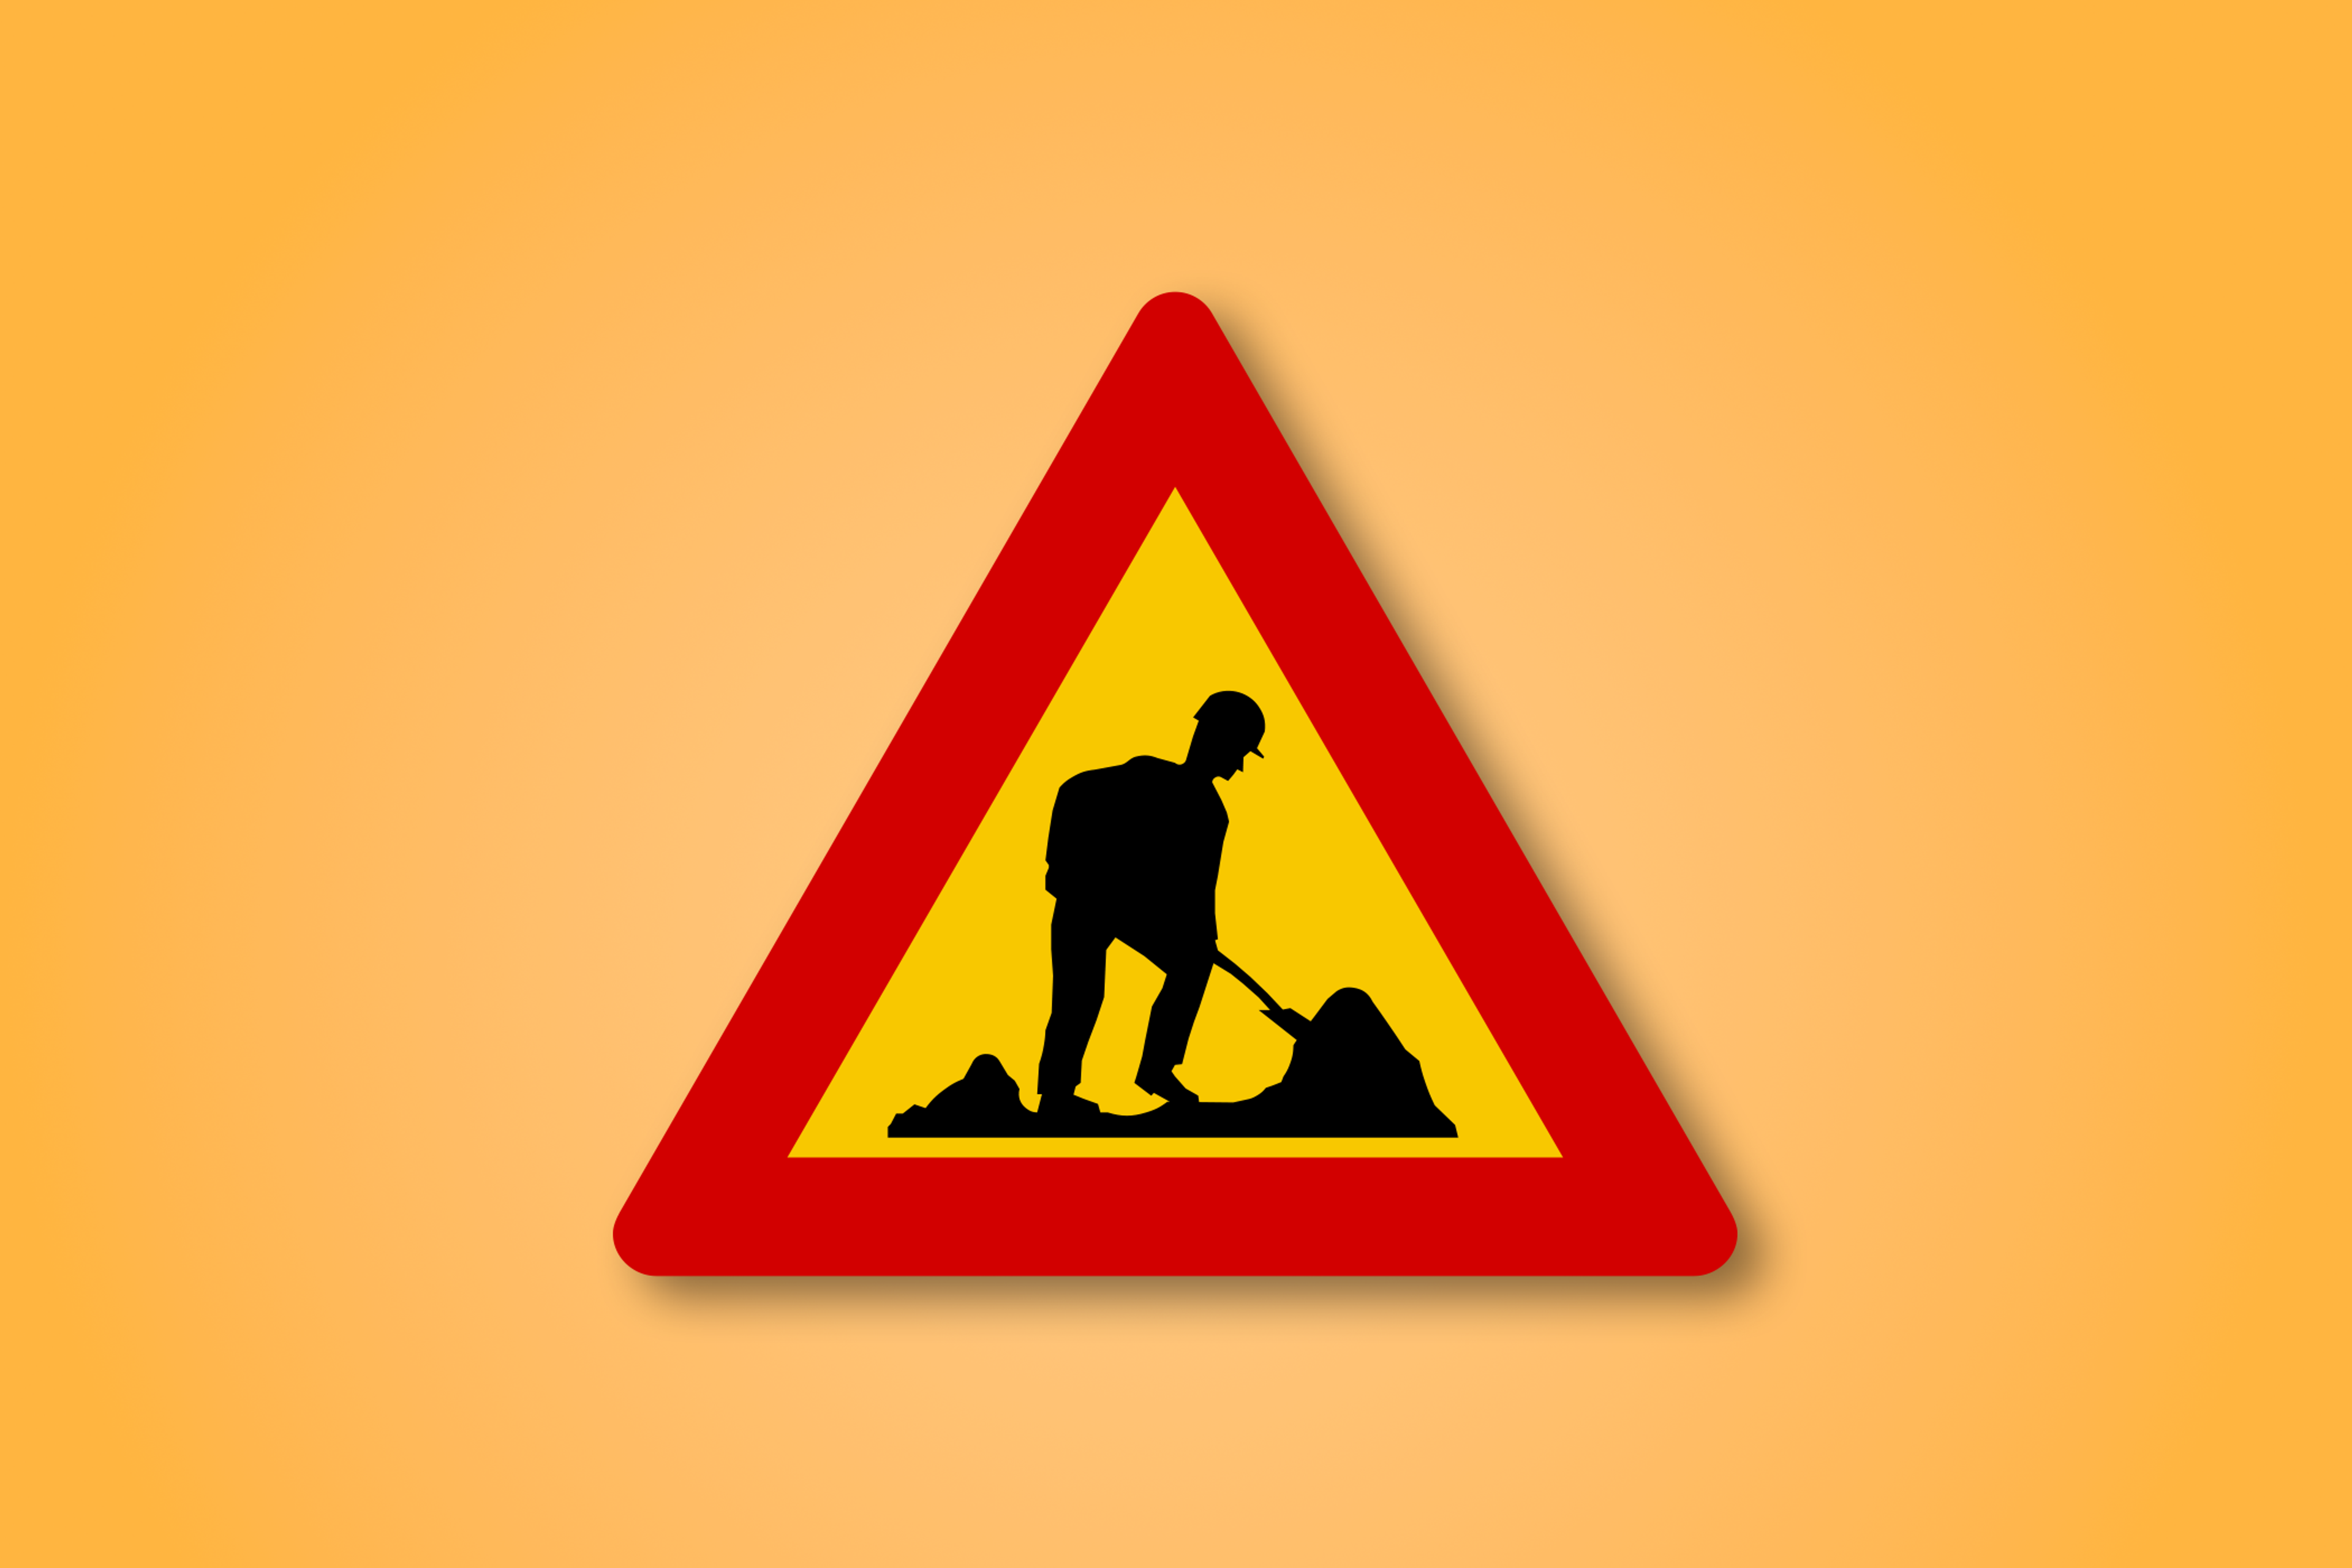 一块红色和黄色的三角形路标，中间有冰岛工人的图标。这个路标表示前方有工人。